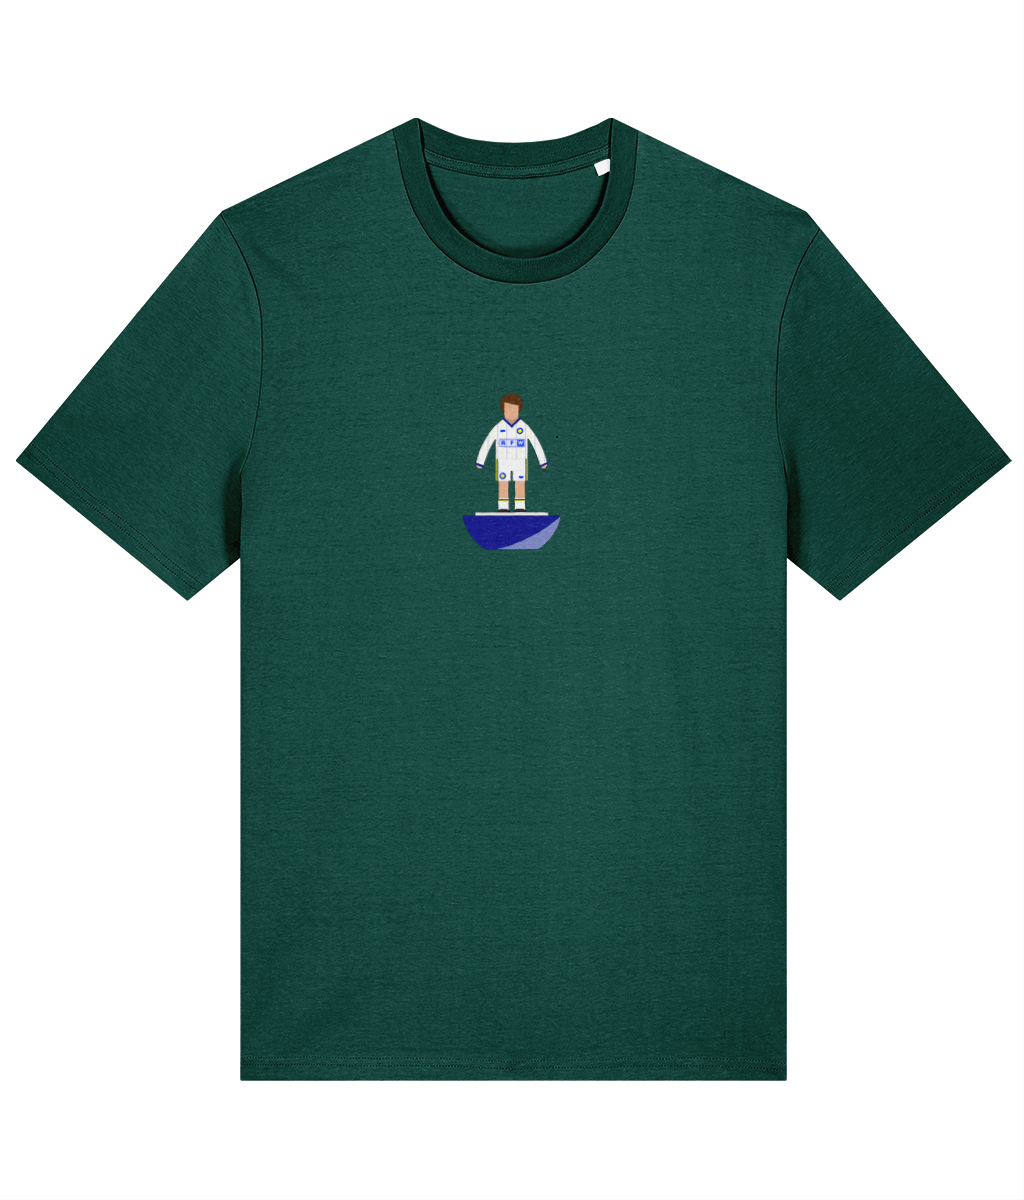 Football Player 'Leeds 1981' Unisex T-Shirt